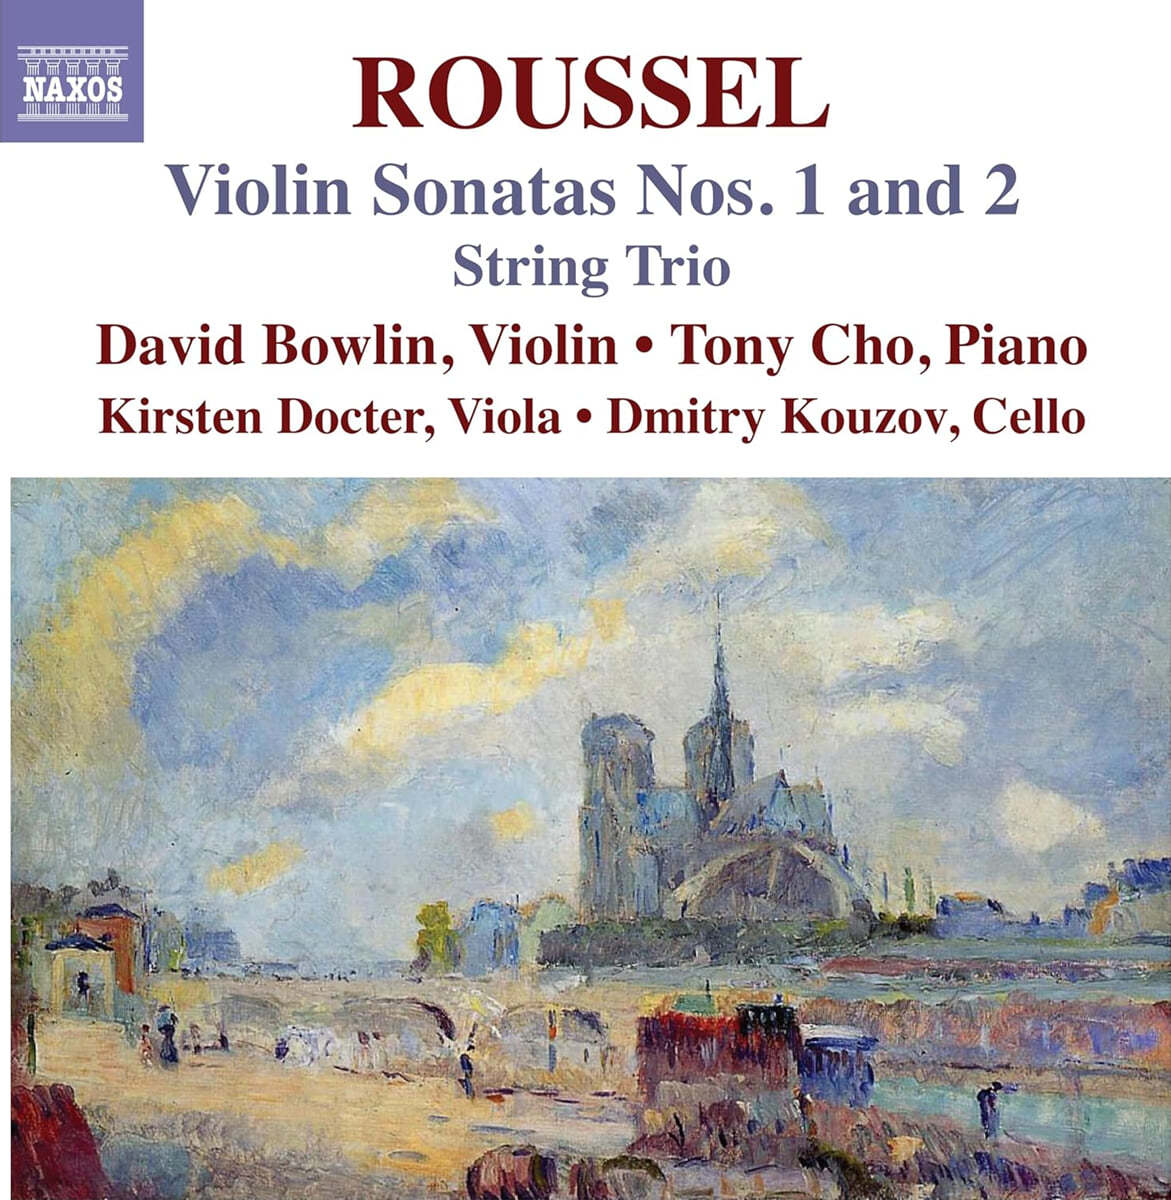 알베르 루셀: 바이올린 소나타 1 & 2번, 현악 3중주 (Roussel: Violin Sonatas Nos.1 And 2)